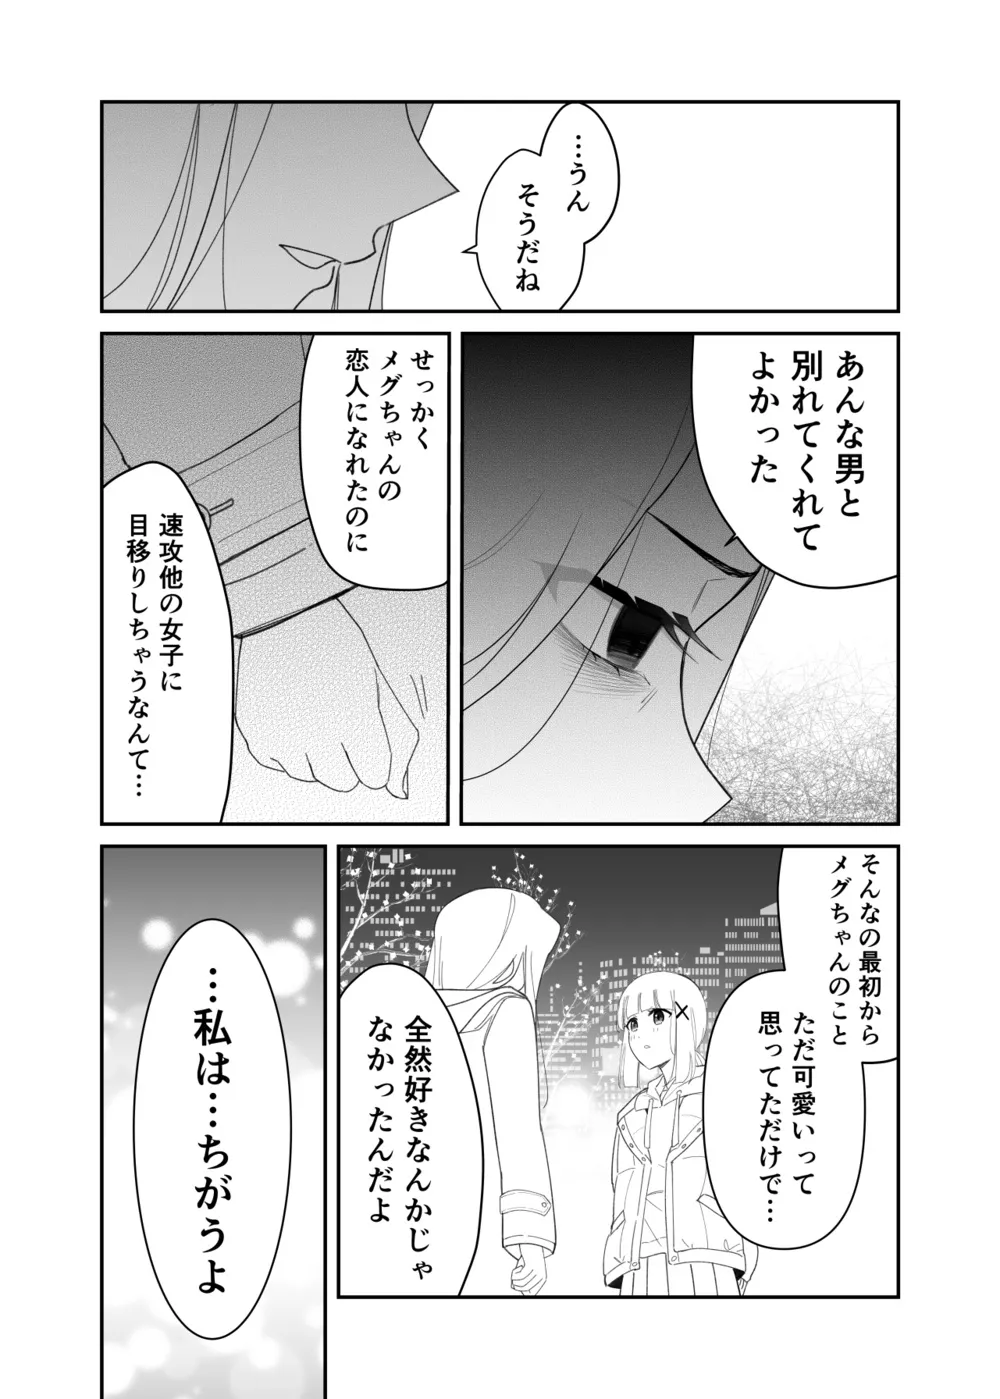 『拗らせ片想い幼馴染百合クリスマス漫画』(6/12)